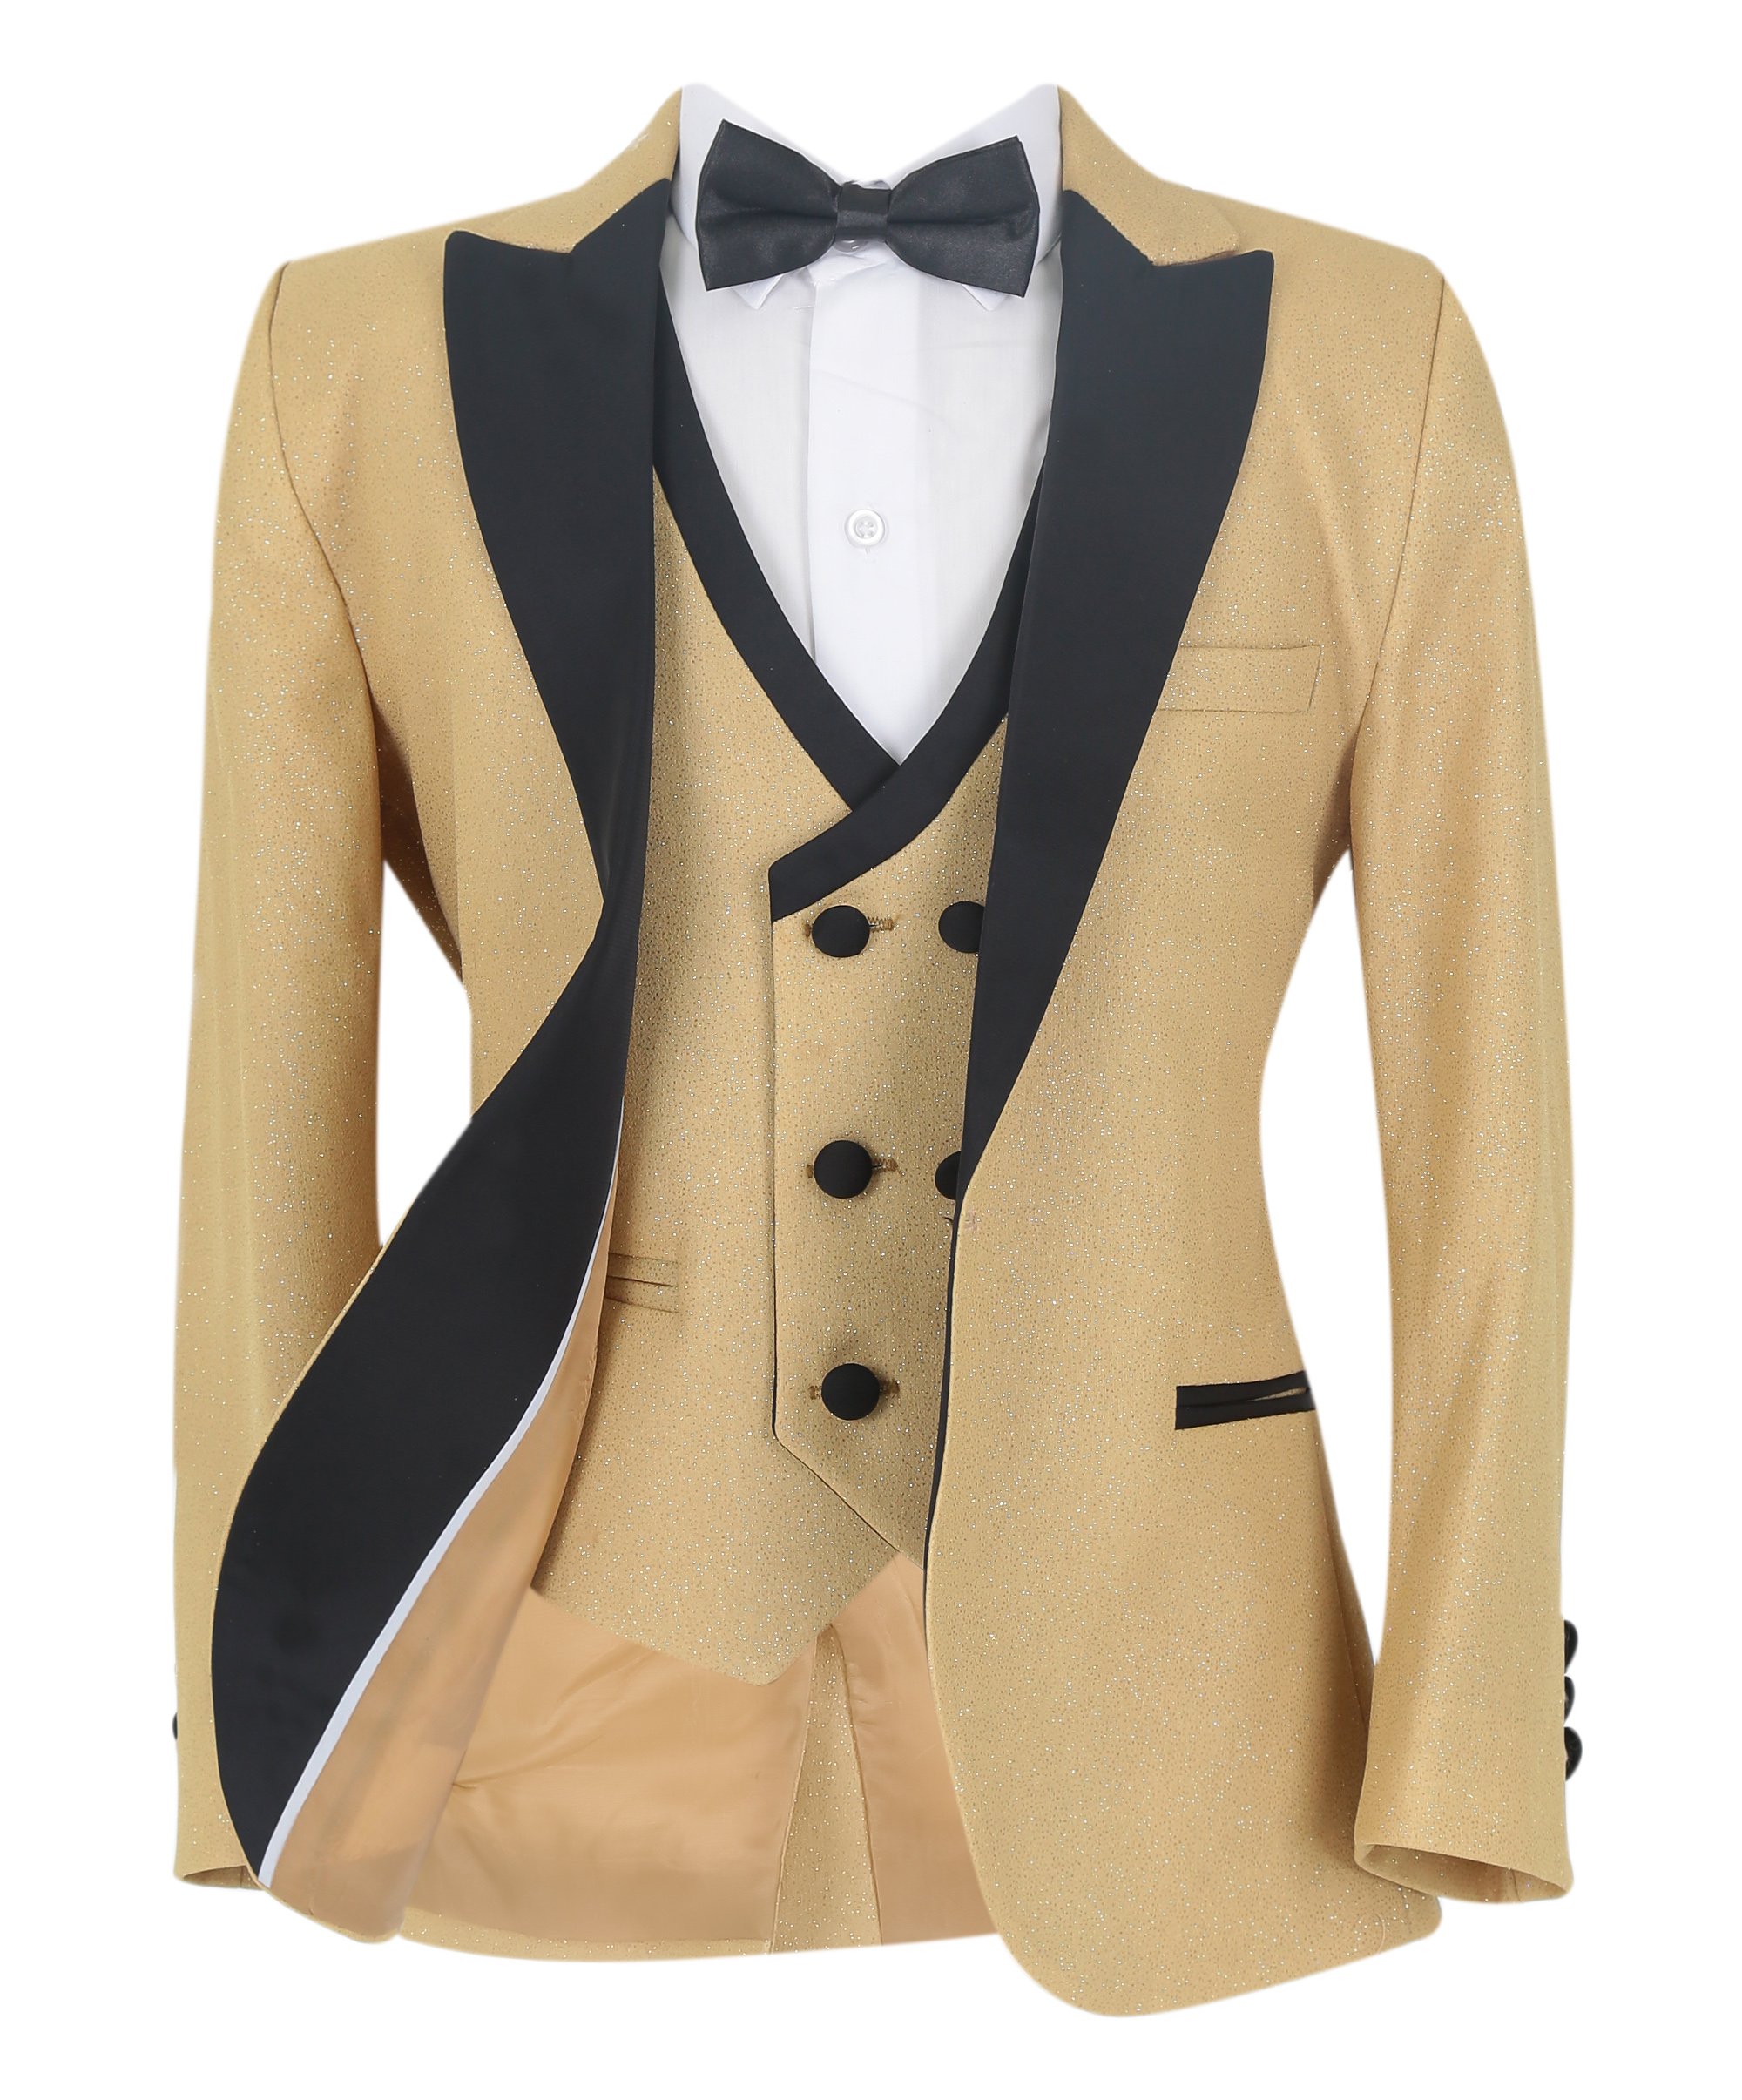 Boys Glittery Slim Fit Tuxedo Dinner Suit - Gold